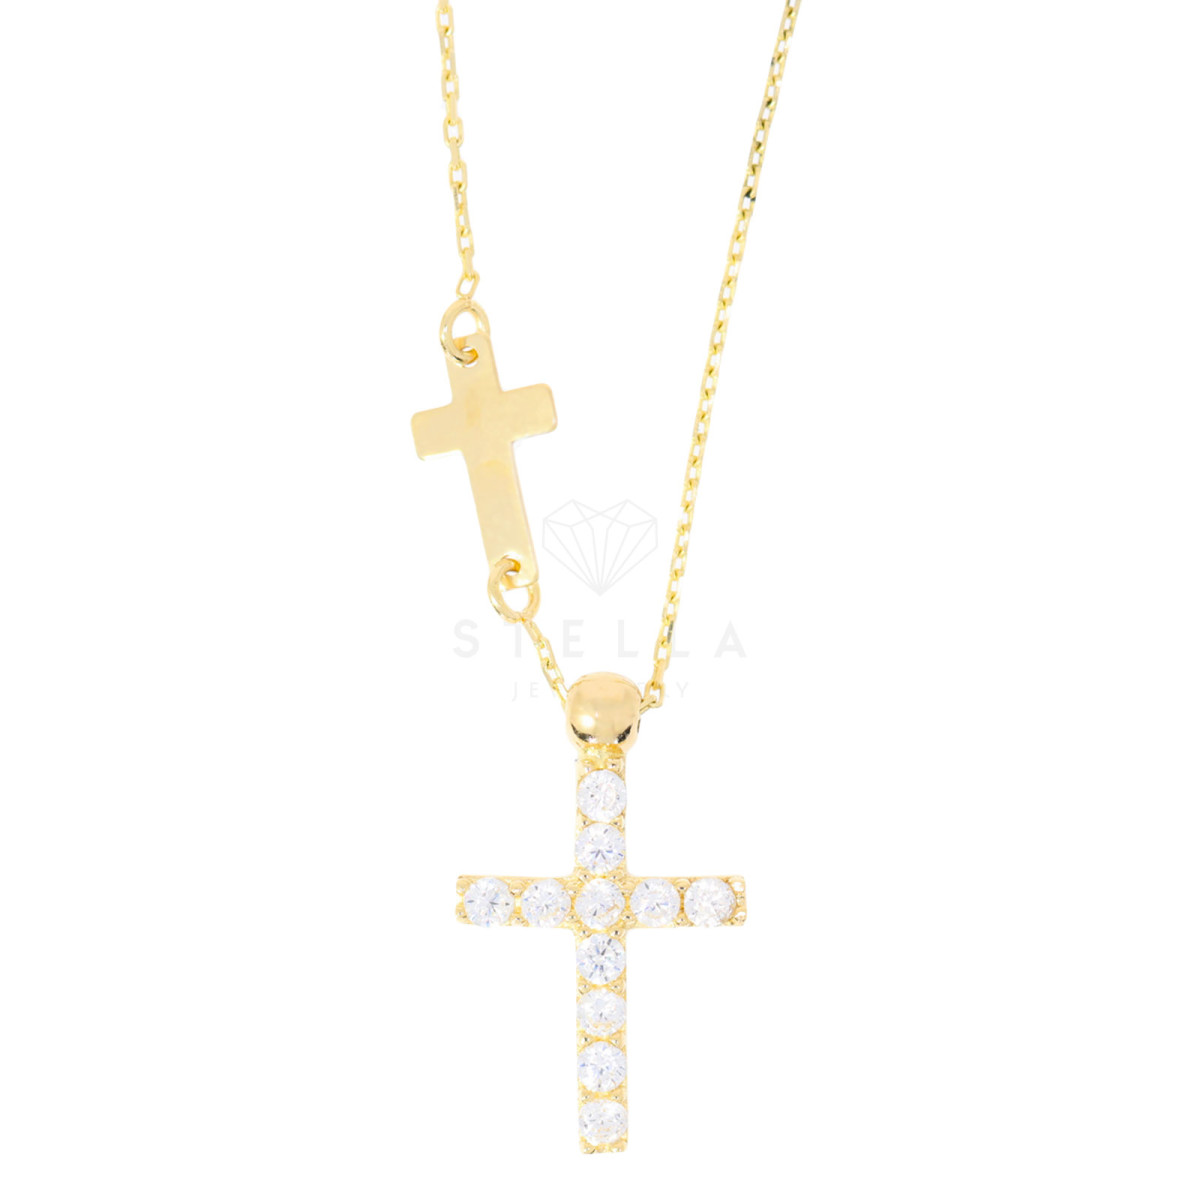 Halskette mit Zirkonia Kreuz Anhänger 585 Gelbgold Kreuzkette feine P,  199,00 €